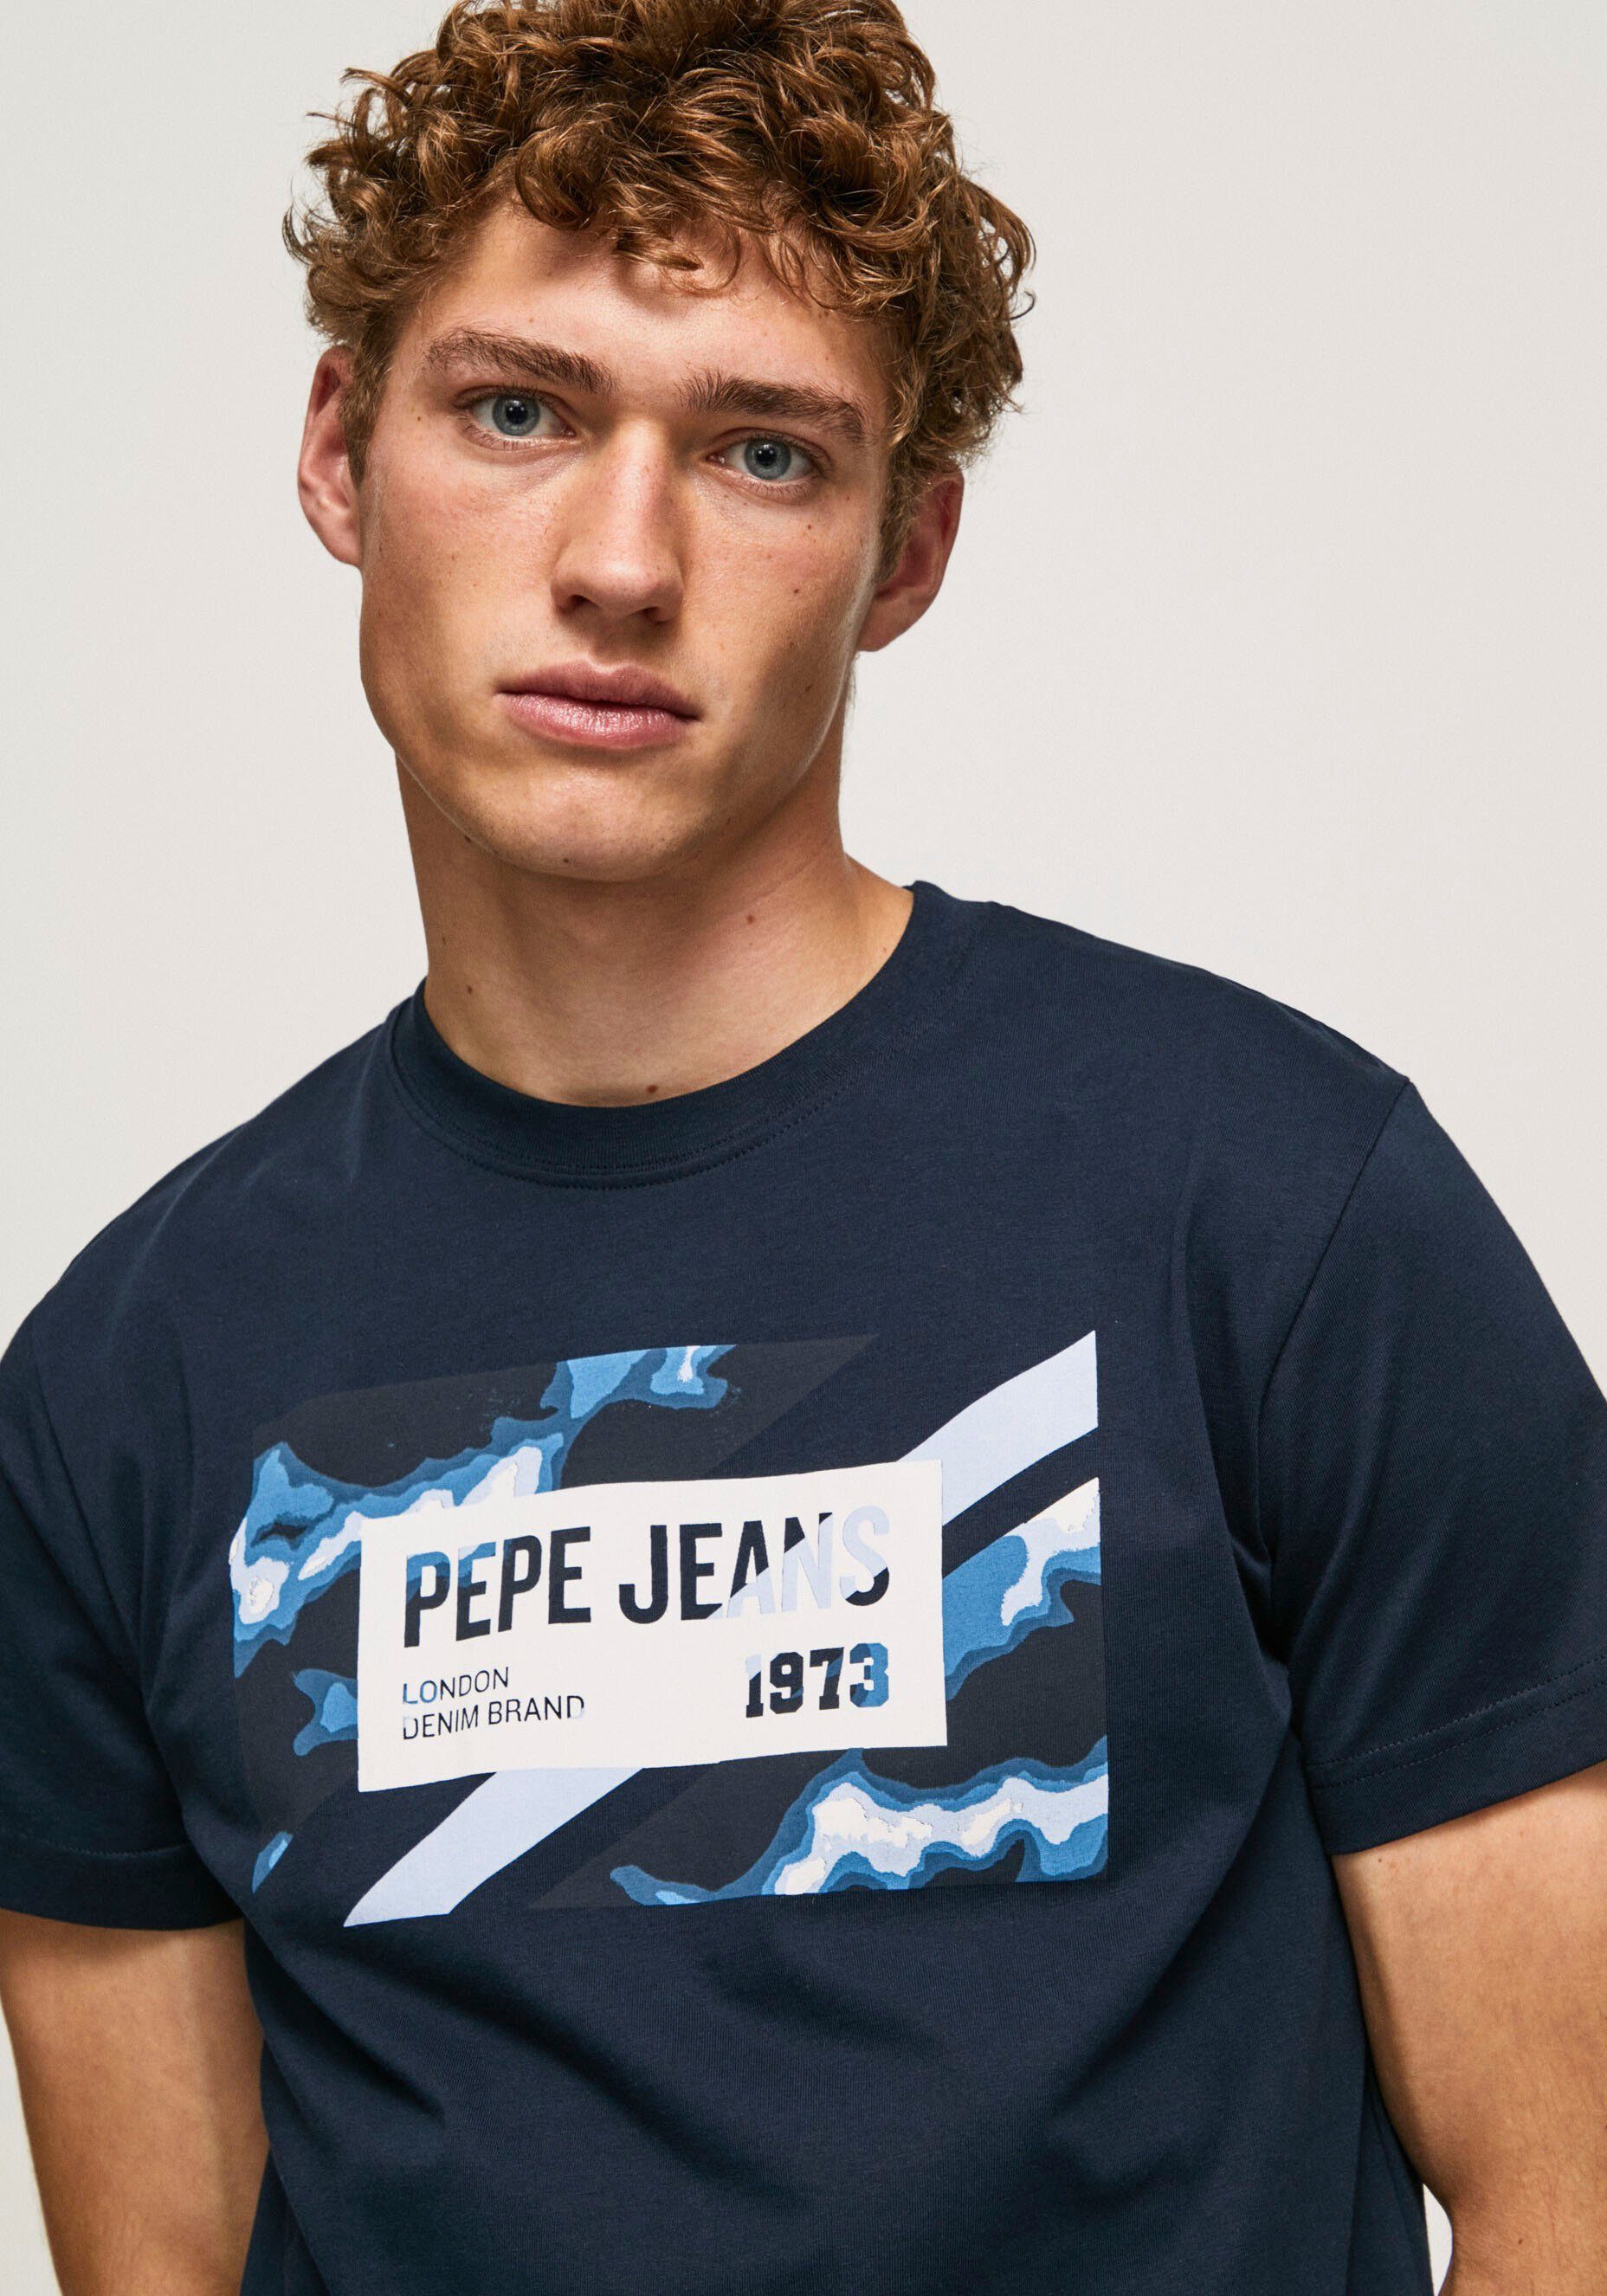 de | Pepe OTTO online T-shirt in Jeans shop